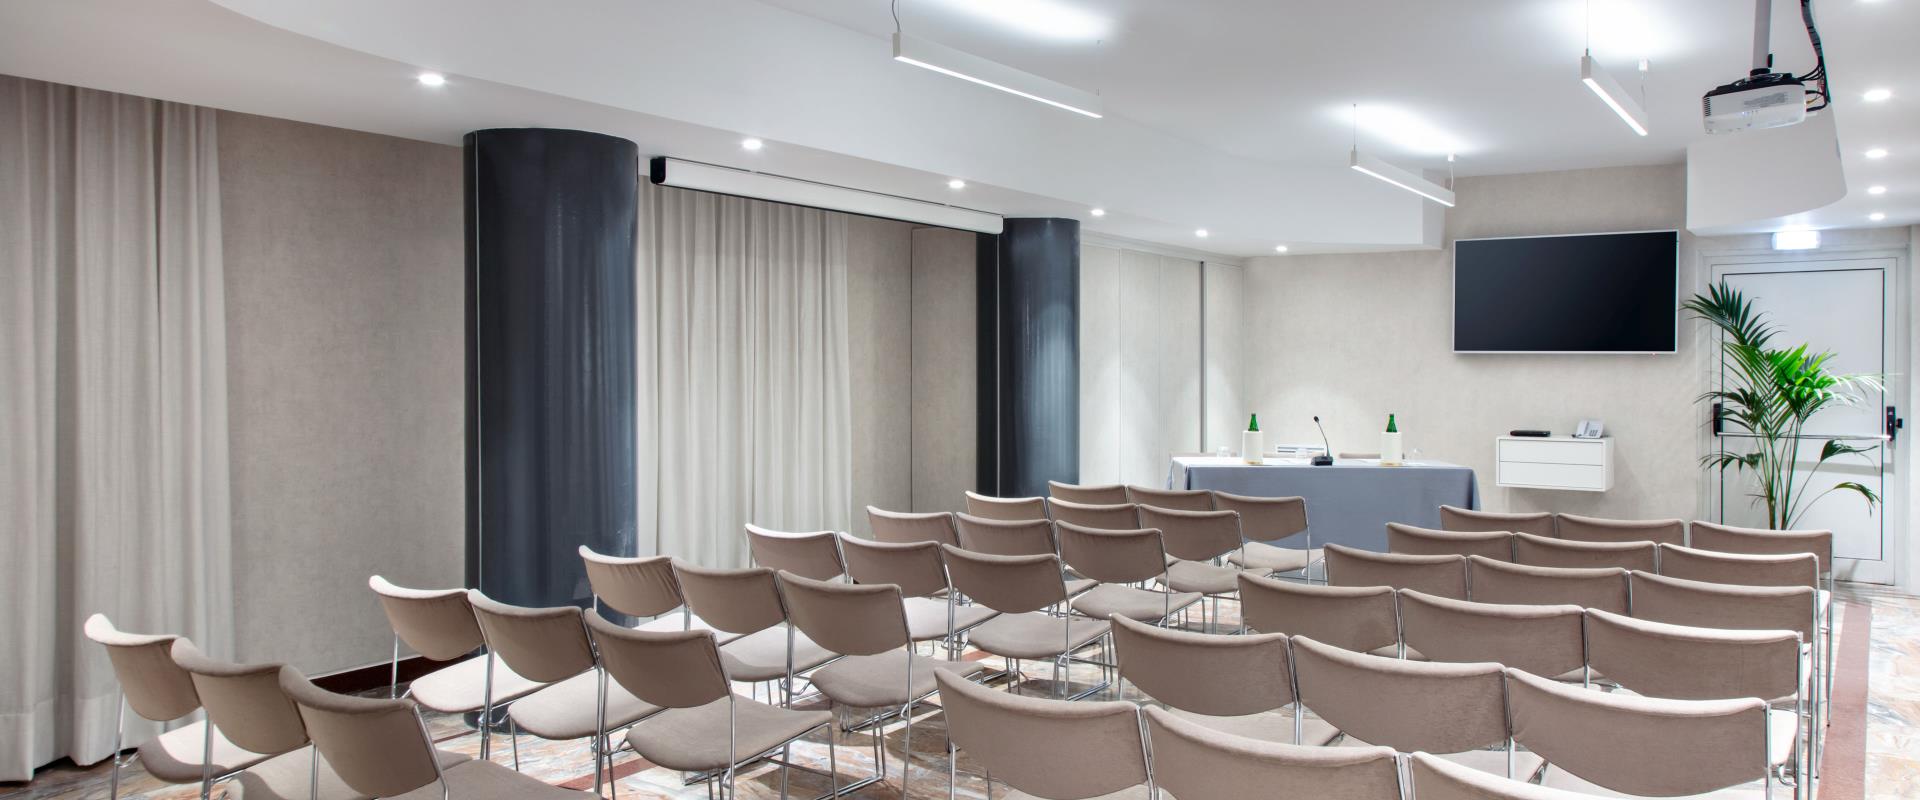 La salle de réunion Ischia de l’hôtel Paradiso à Naples peut accueillir jusqu’à 42 personnes